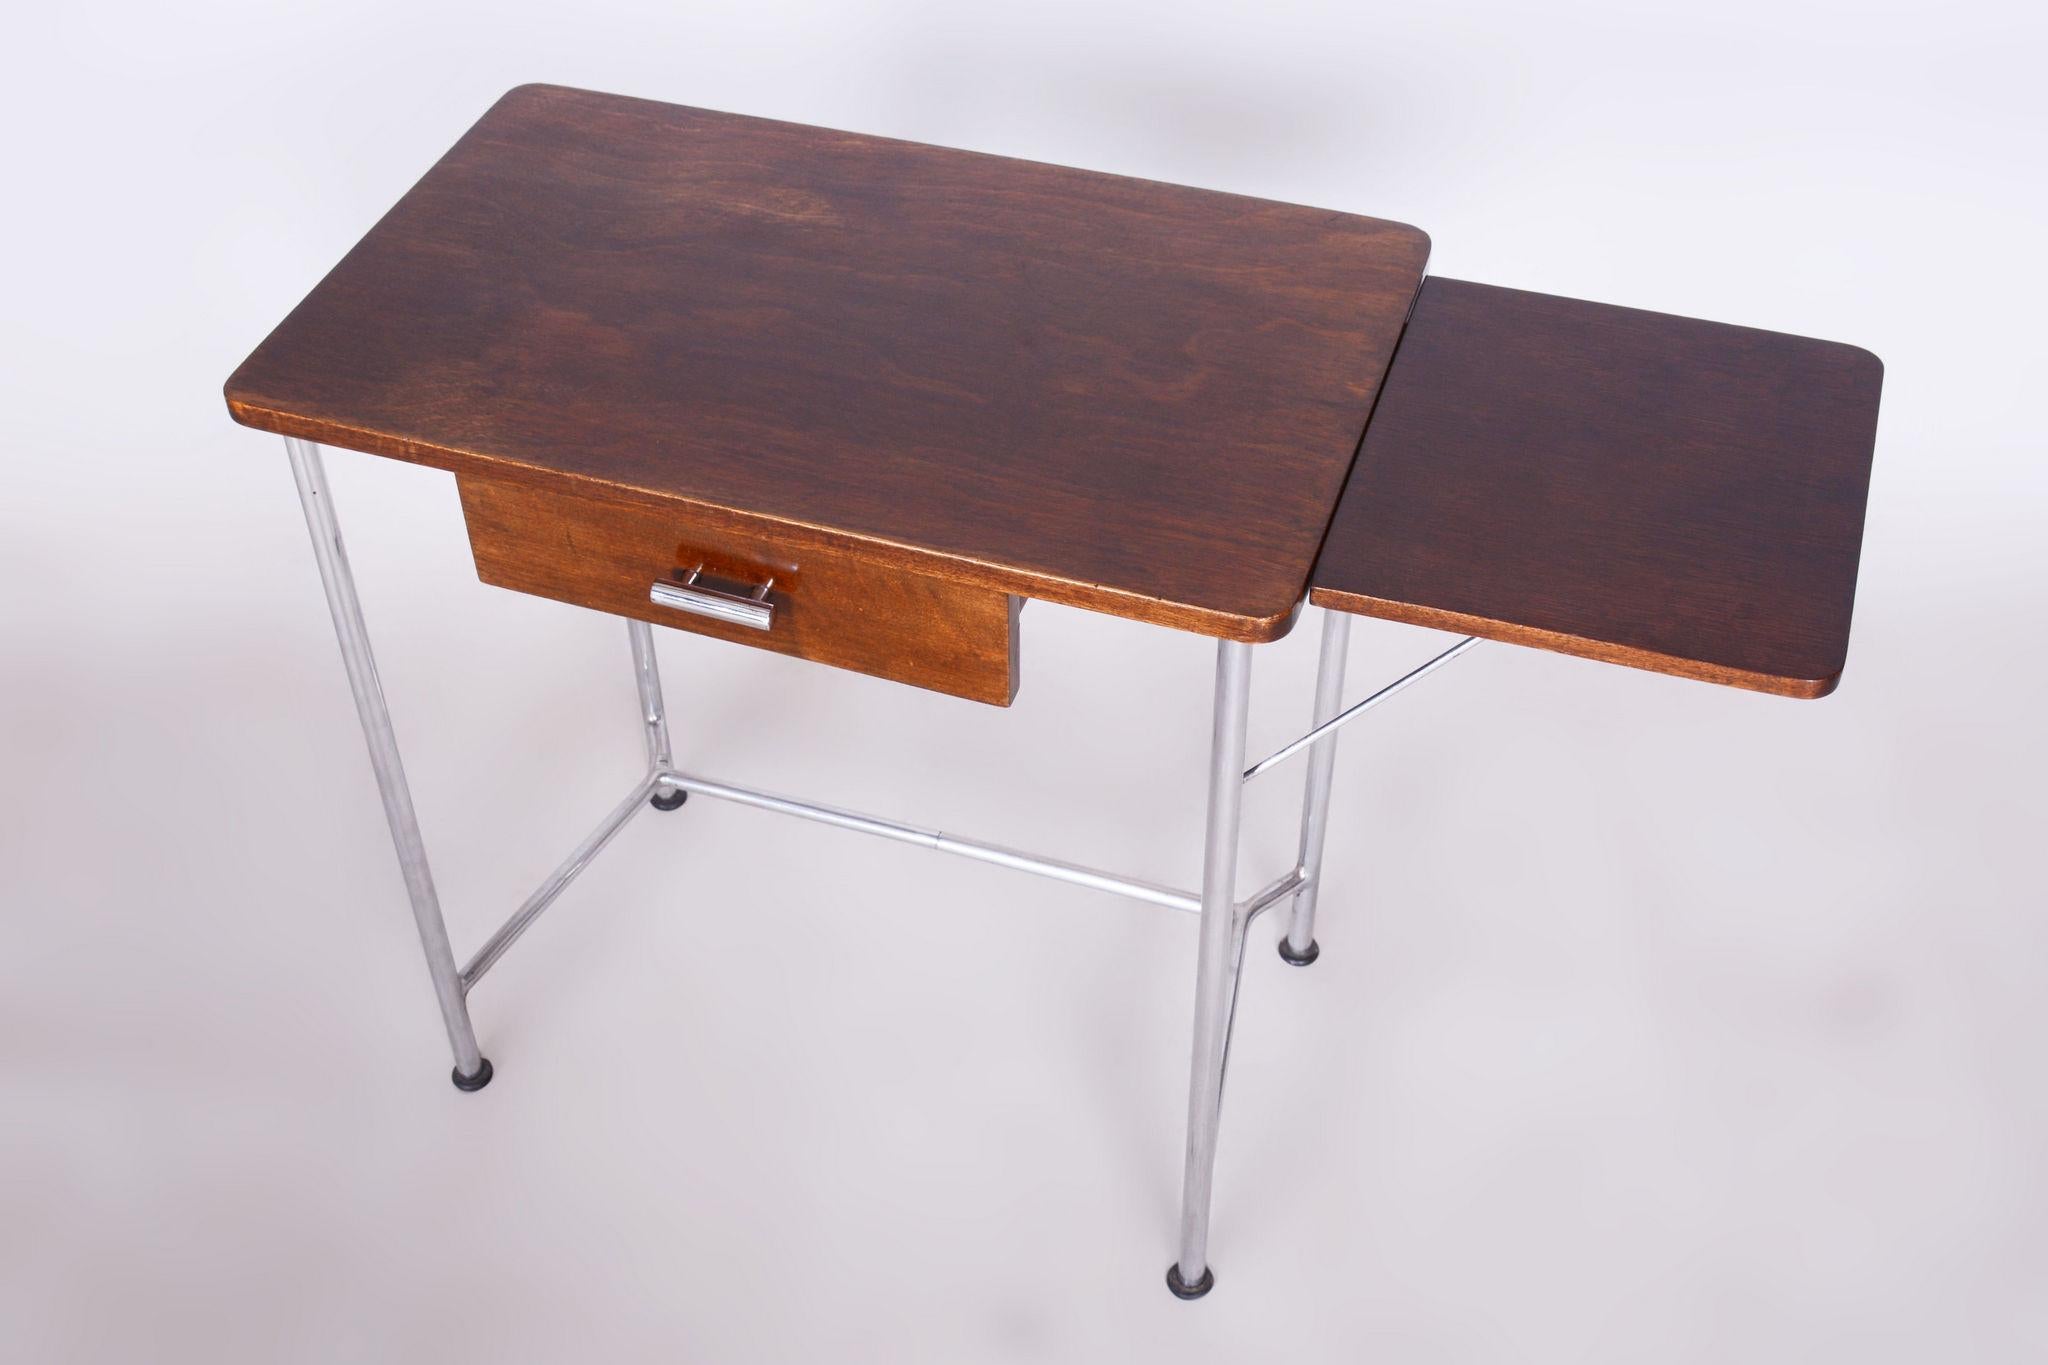 Restored Bauhaus Small Oak Writing Desk, Mücke Melder, Chrome, Czechia, 1930s For Sale 4